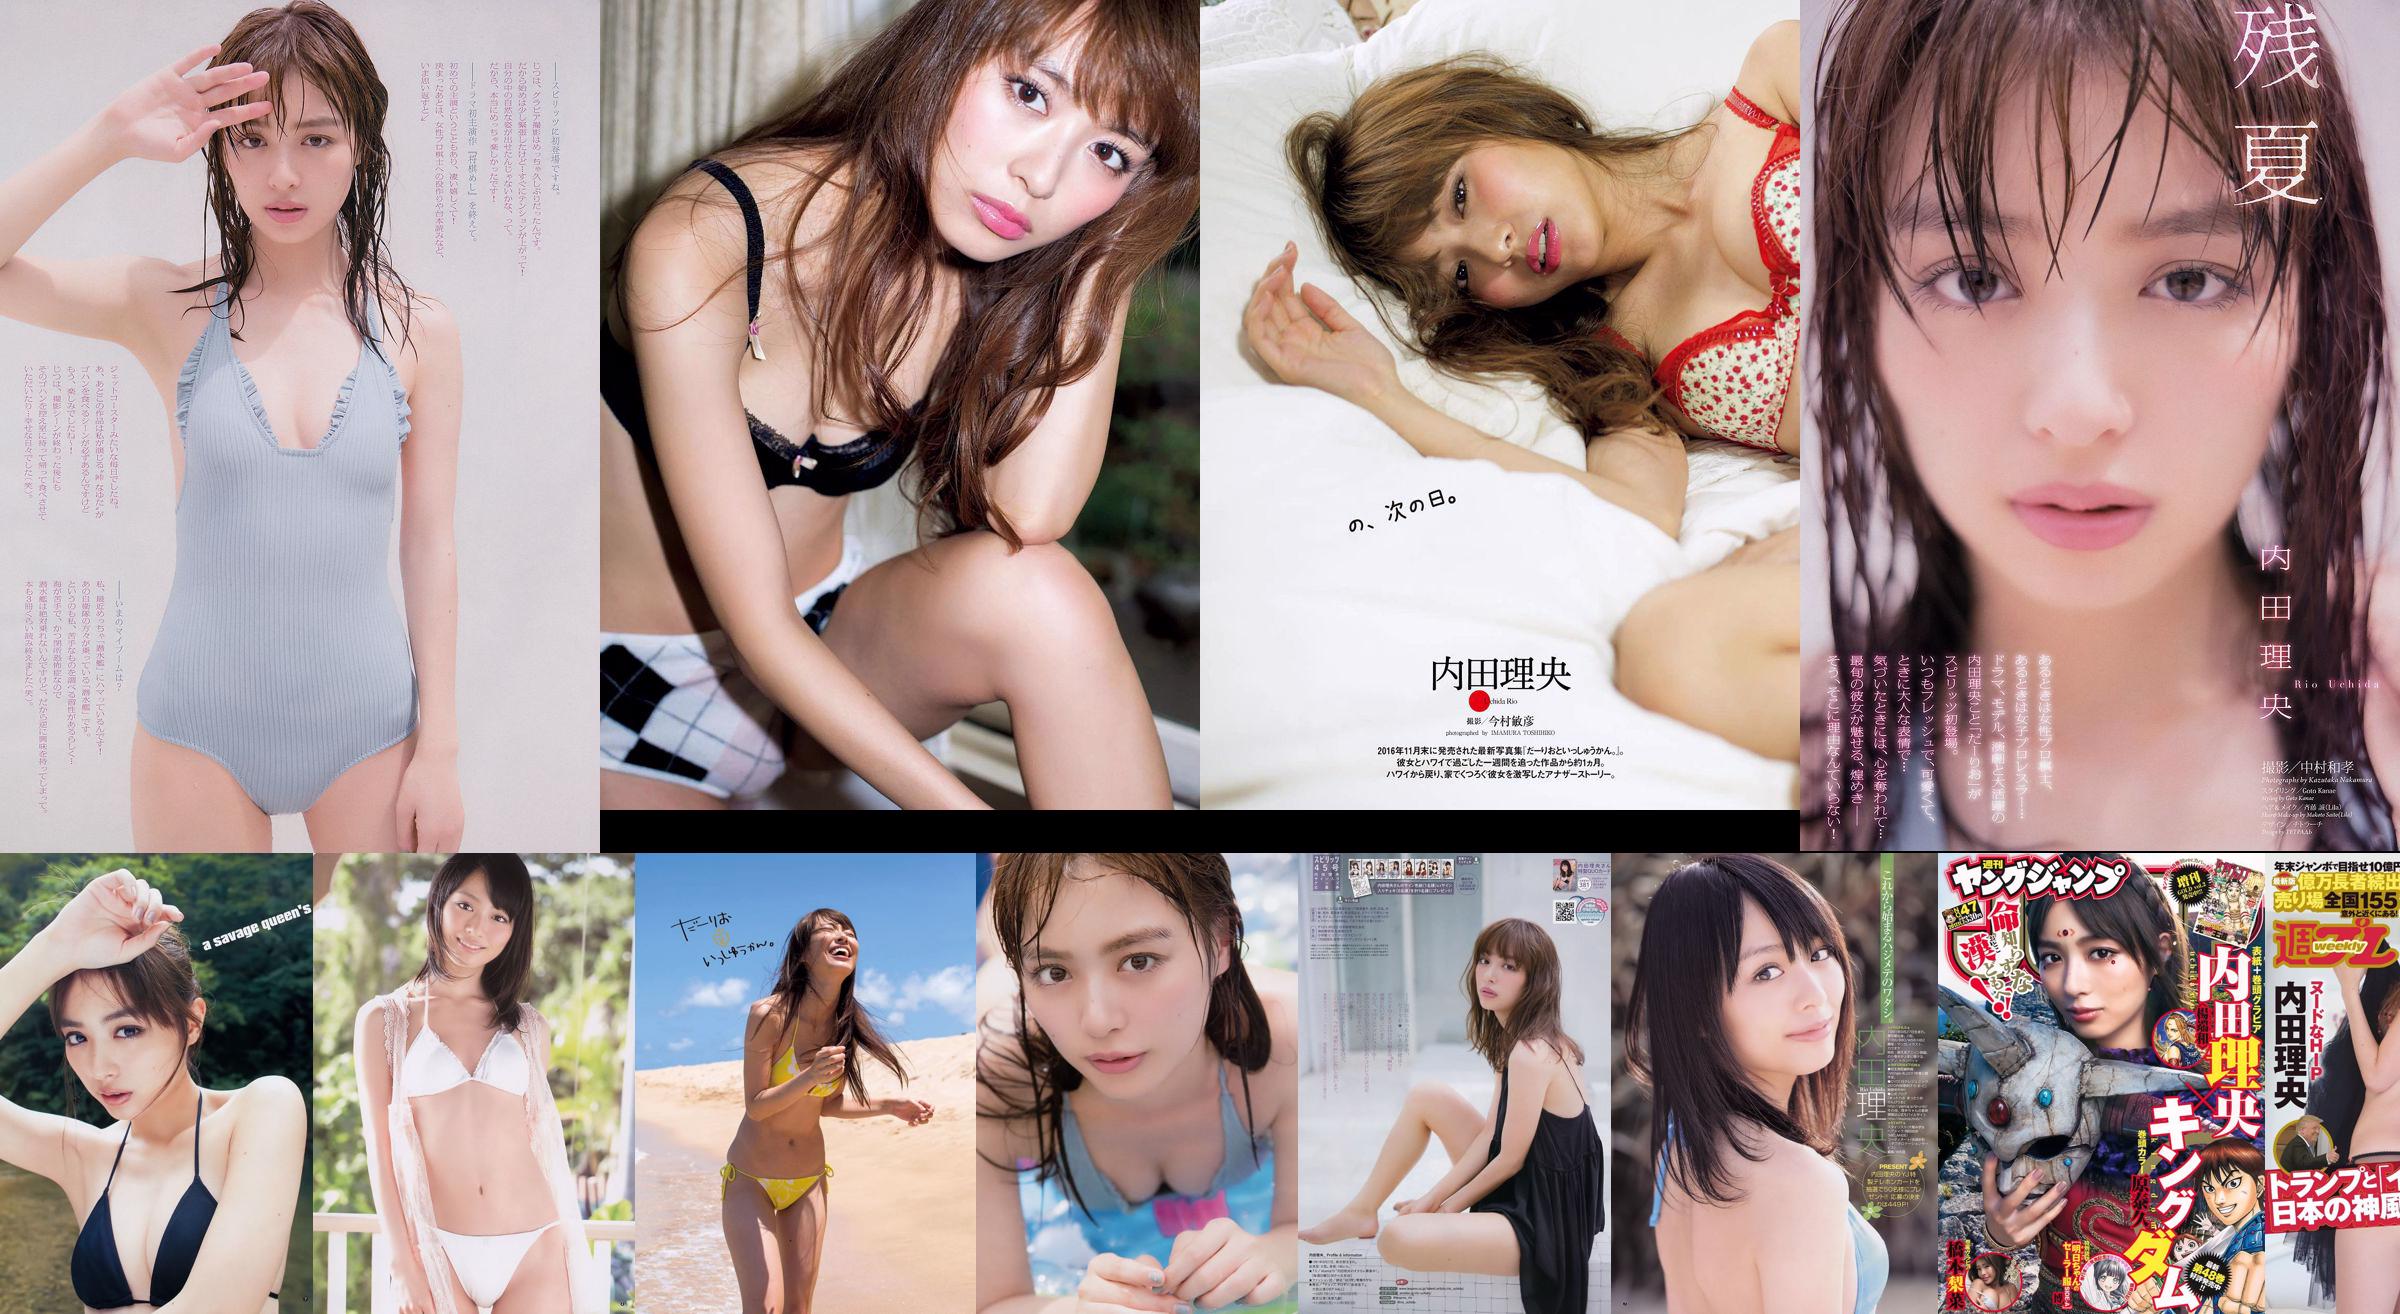 Haruna Kojima YUNA Riho Yoshioka Akemi Darenogare Ruriko Kojima Mana Sakura [Weekly Playboy] 2015 No.34-35 Photographie No.f477a4 Page 3